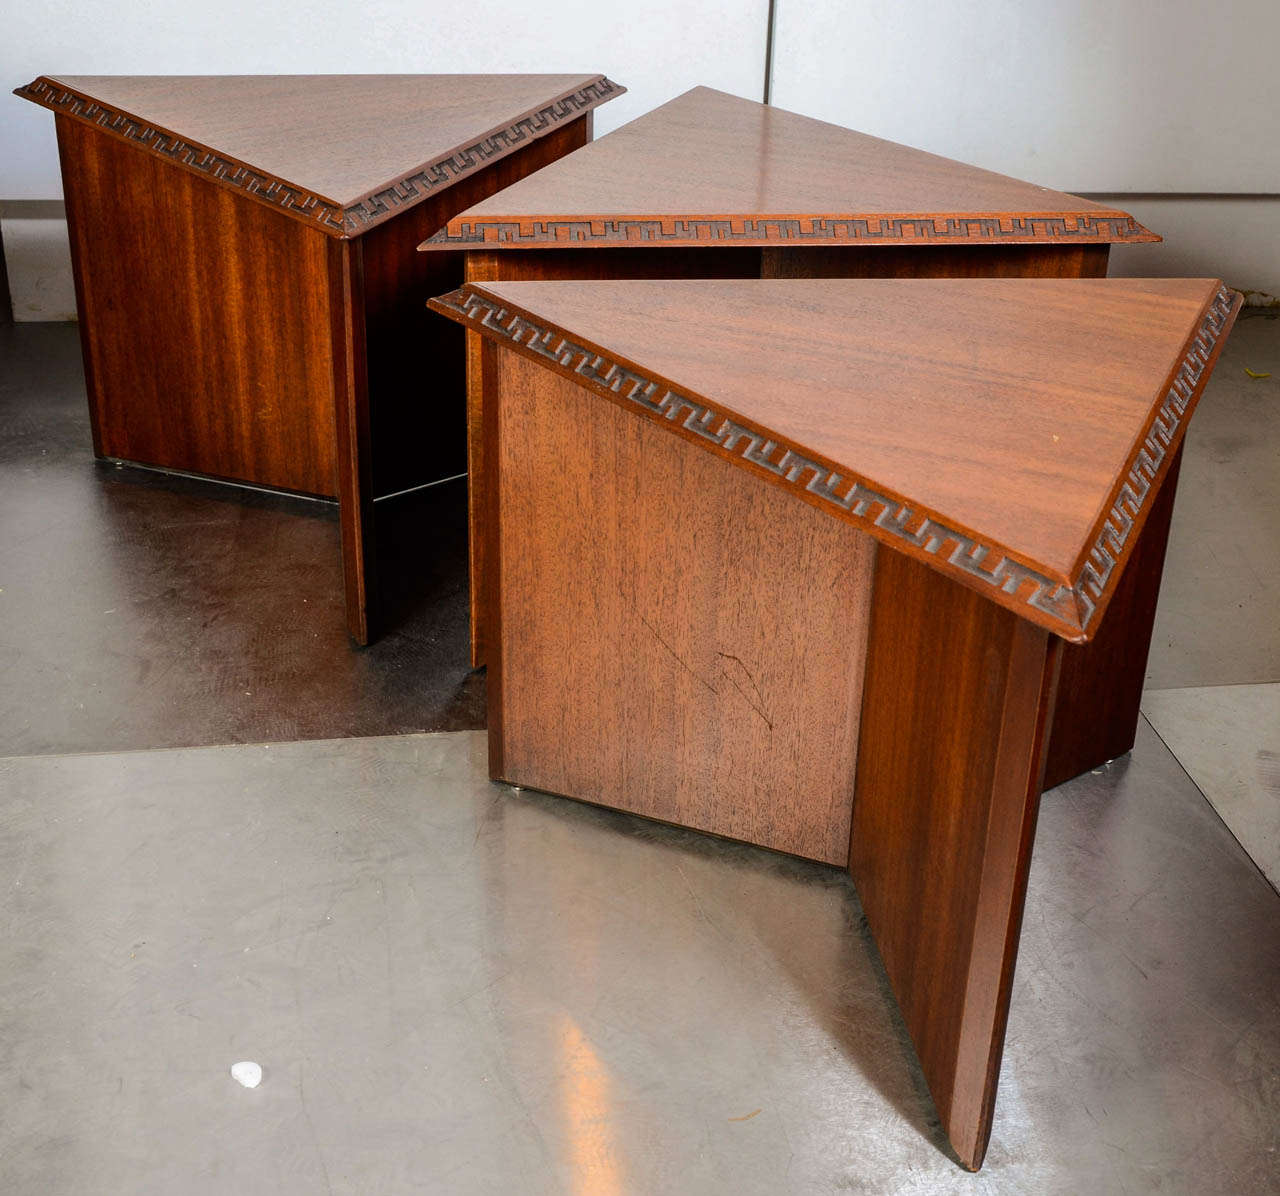 3 tables in mahogany